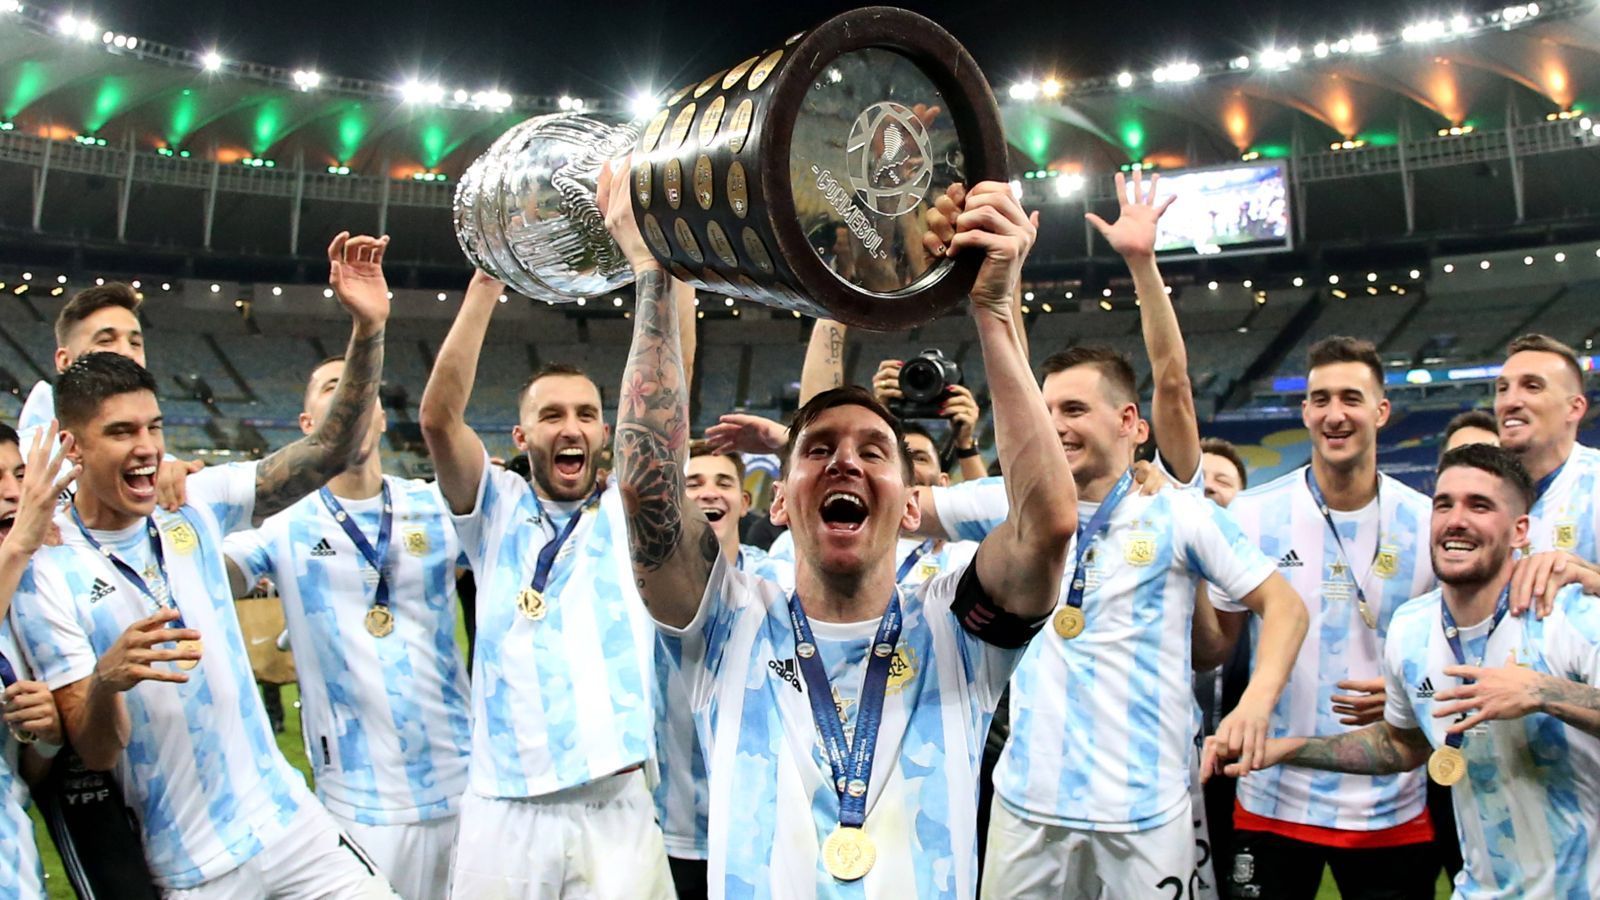 
                <strong>10. Juli 2021: Der erste große Titel mit der Nationalmannschaft</strong><br>
                Stets hing Messi in seiner großartigen Karriere nach, mit der Nationalmannschaft erfolglos gewesen zu sein. Naturgemäß wird er als Starspieler dafür zur Verantwortung gezogen. Im Juli 2021 war es dann aber endlich soweit: Durch ein 1:0 im Finale gegen Brasilien sicherte sich das von Messi als Kapitän angeführte Argentinien den Sieg bei der Copa America - im Land des großen Rivalen. Messi wurde gemeinsam mit Neymar als bester Spieler des Turniers ausgezeichnet, mit seinen nun 151 Länderspielen und 76 Treffern hält er die Rekordwerte für sein Land.
              